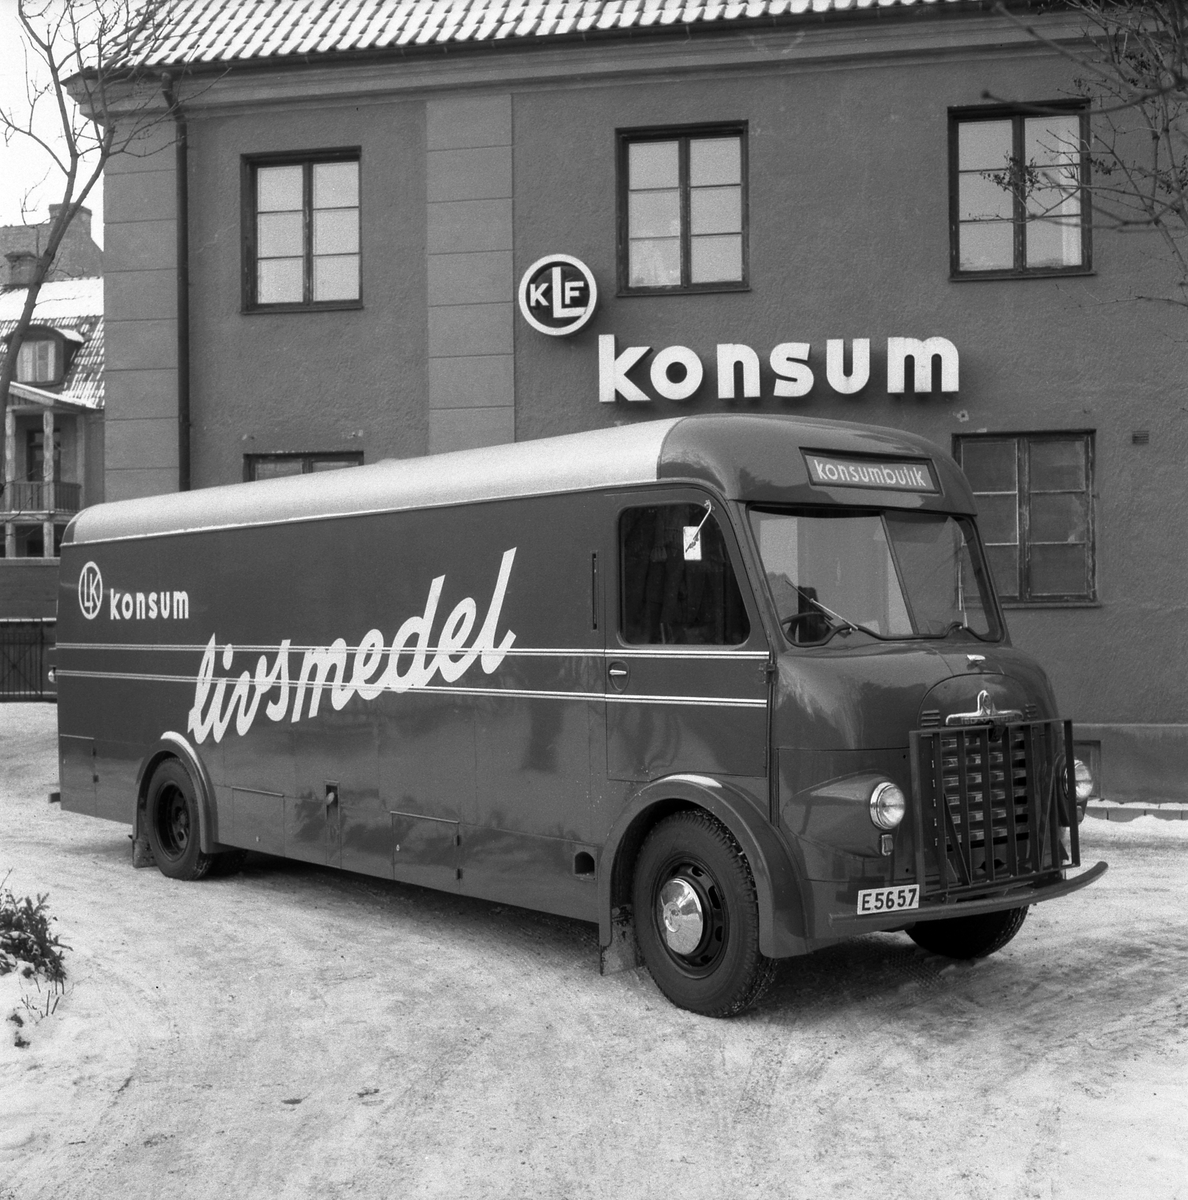 Konsumtionsföreningen Linköpings nya livsmedelsbuss 1955. En Bedford som modifierats för handel på hjul.

Anm: Platsen har inte lokaliserats.